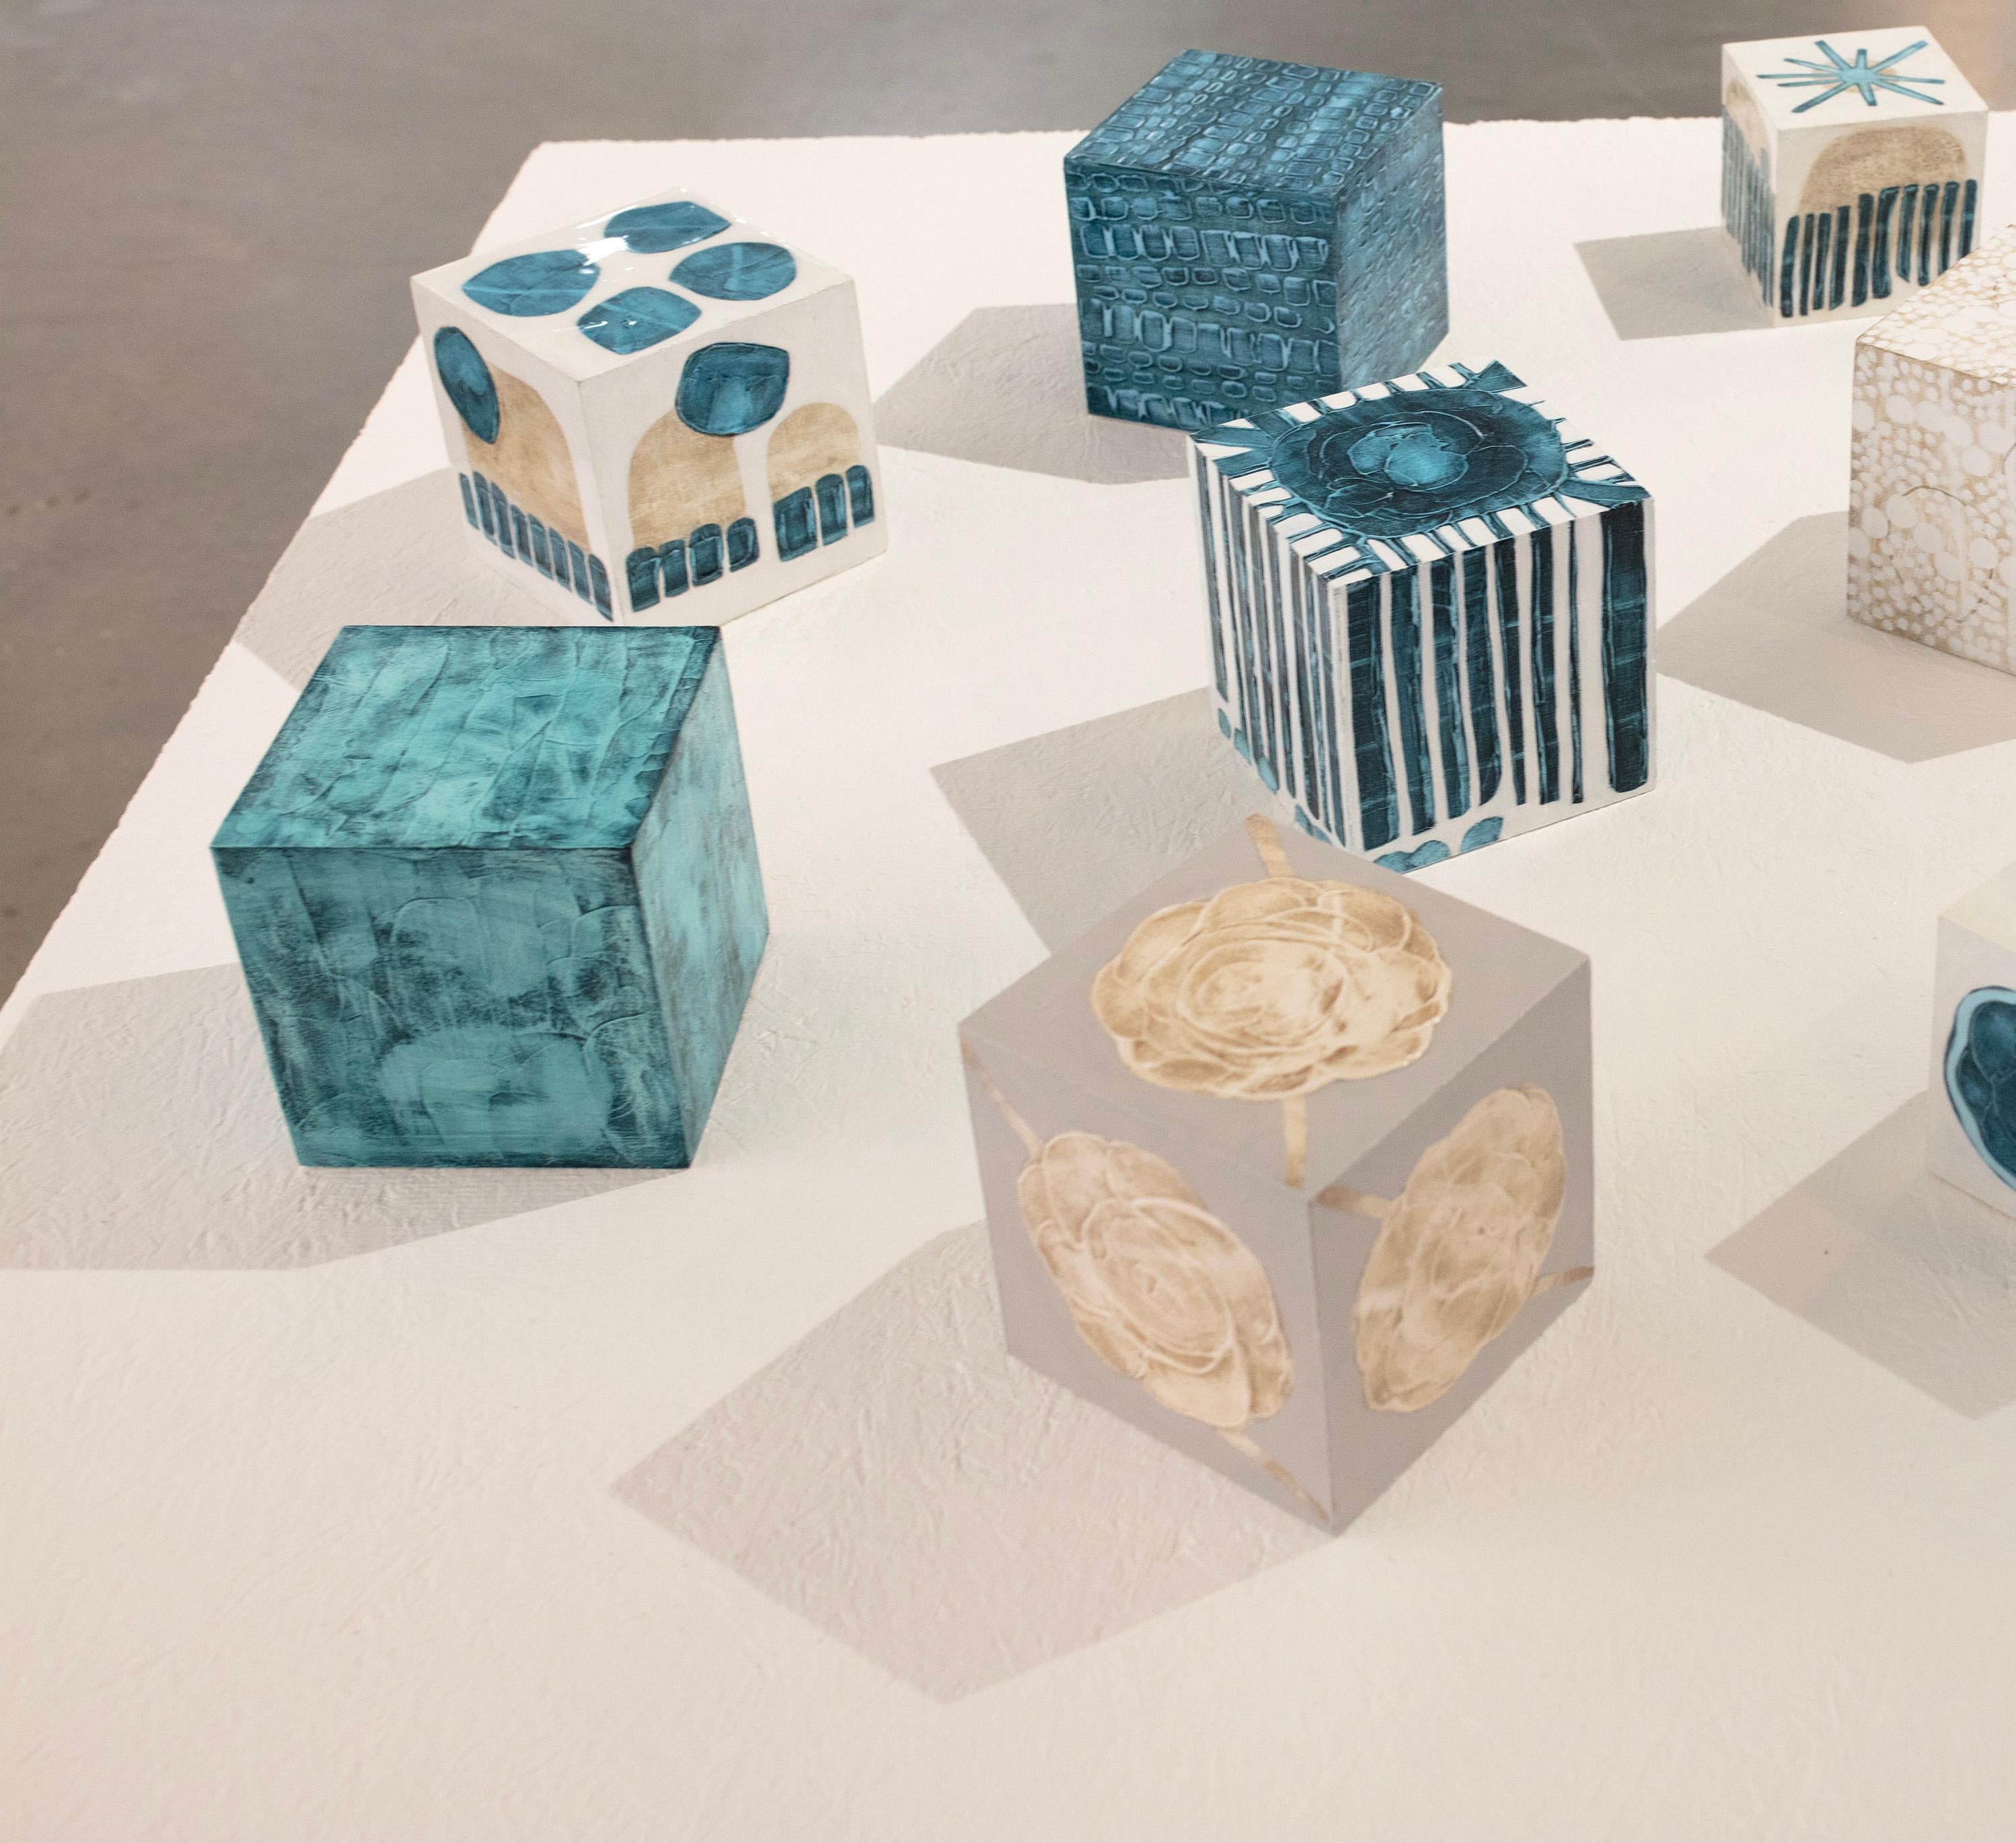 Ce cube sculptural de 5 pouces peint à la main par Sofie Swann est réalisé avec de la peinture acrylique et du gesso sur bois. Il présente une palette de sarcelles profondes avec une texture légère sur la surface du cube. Il est signé par l'artiste